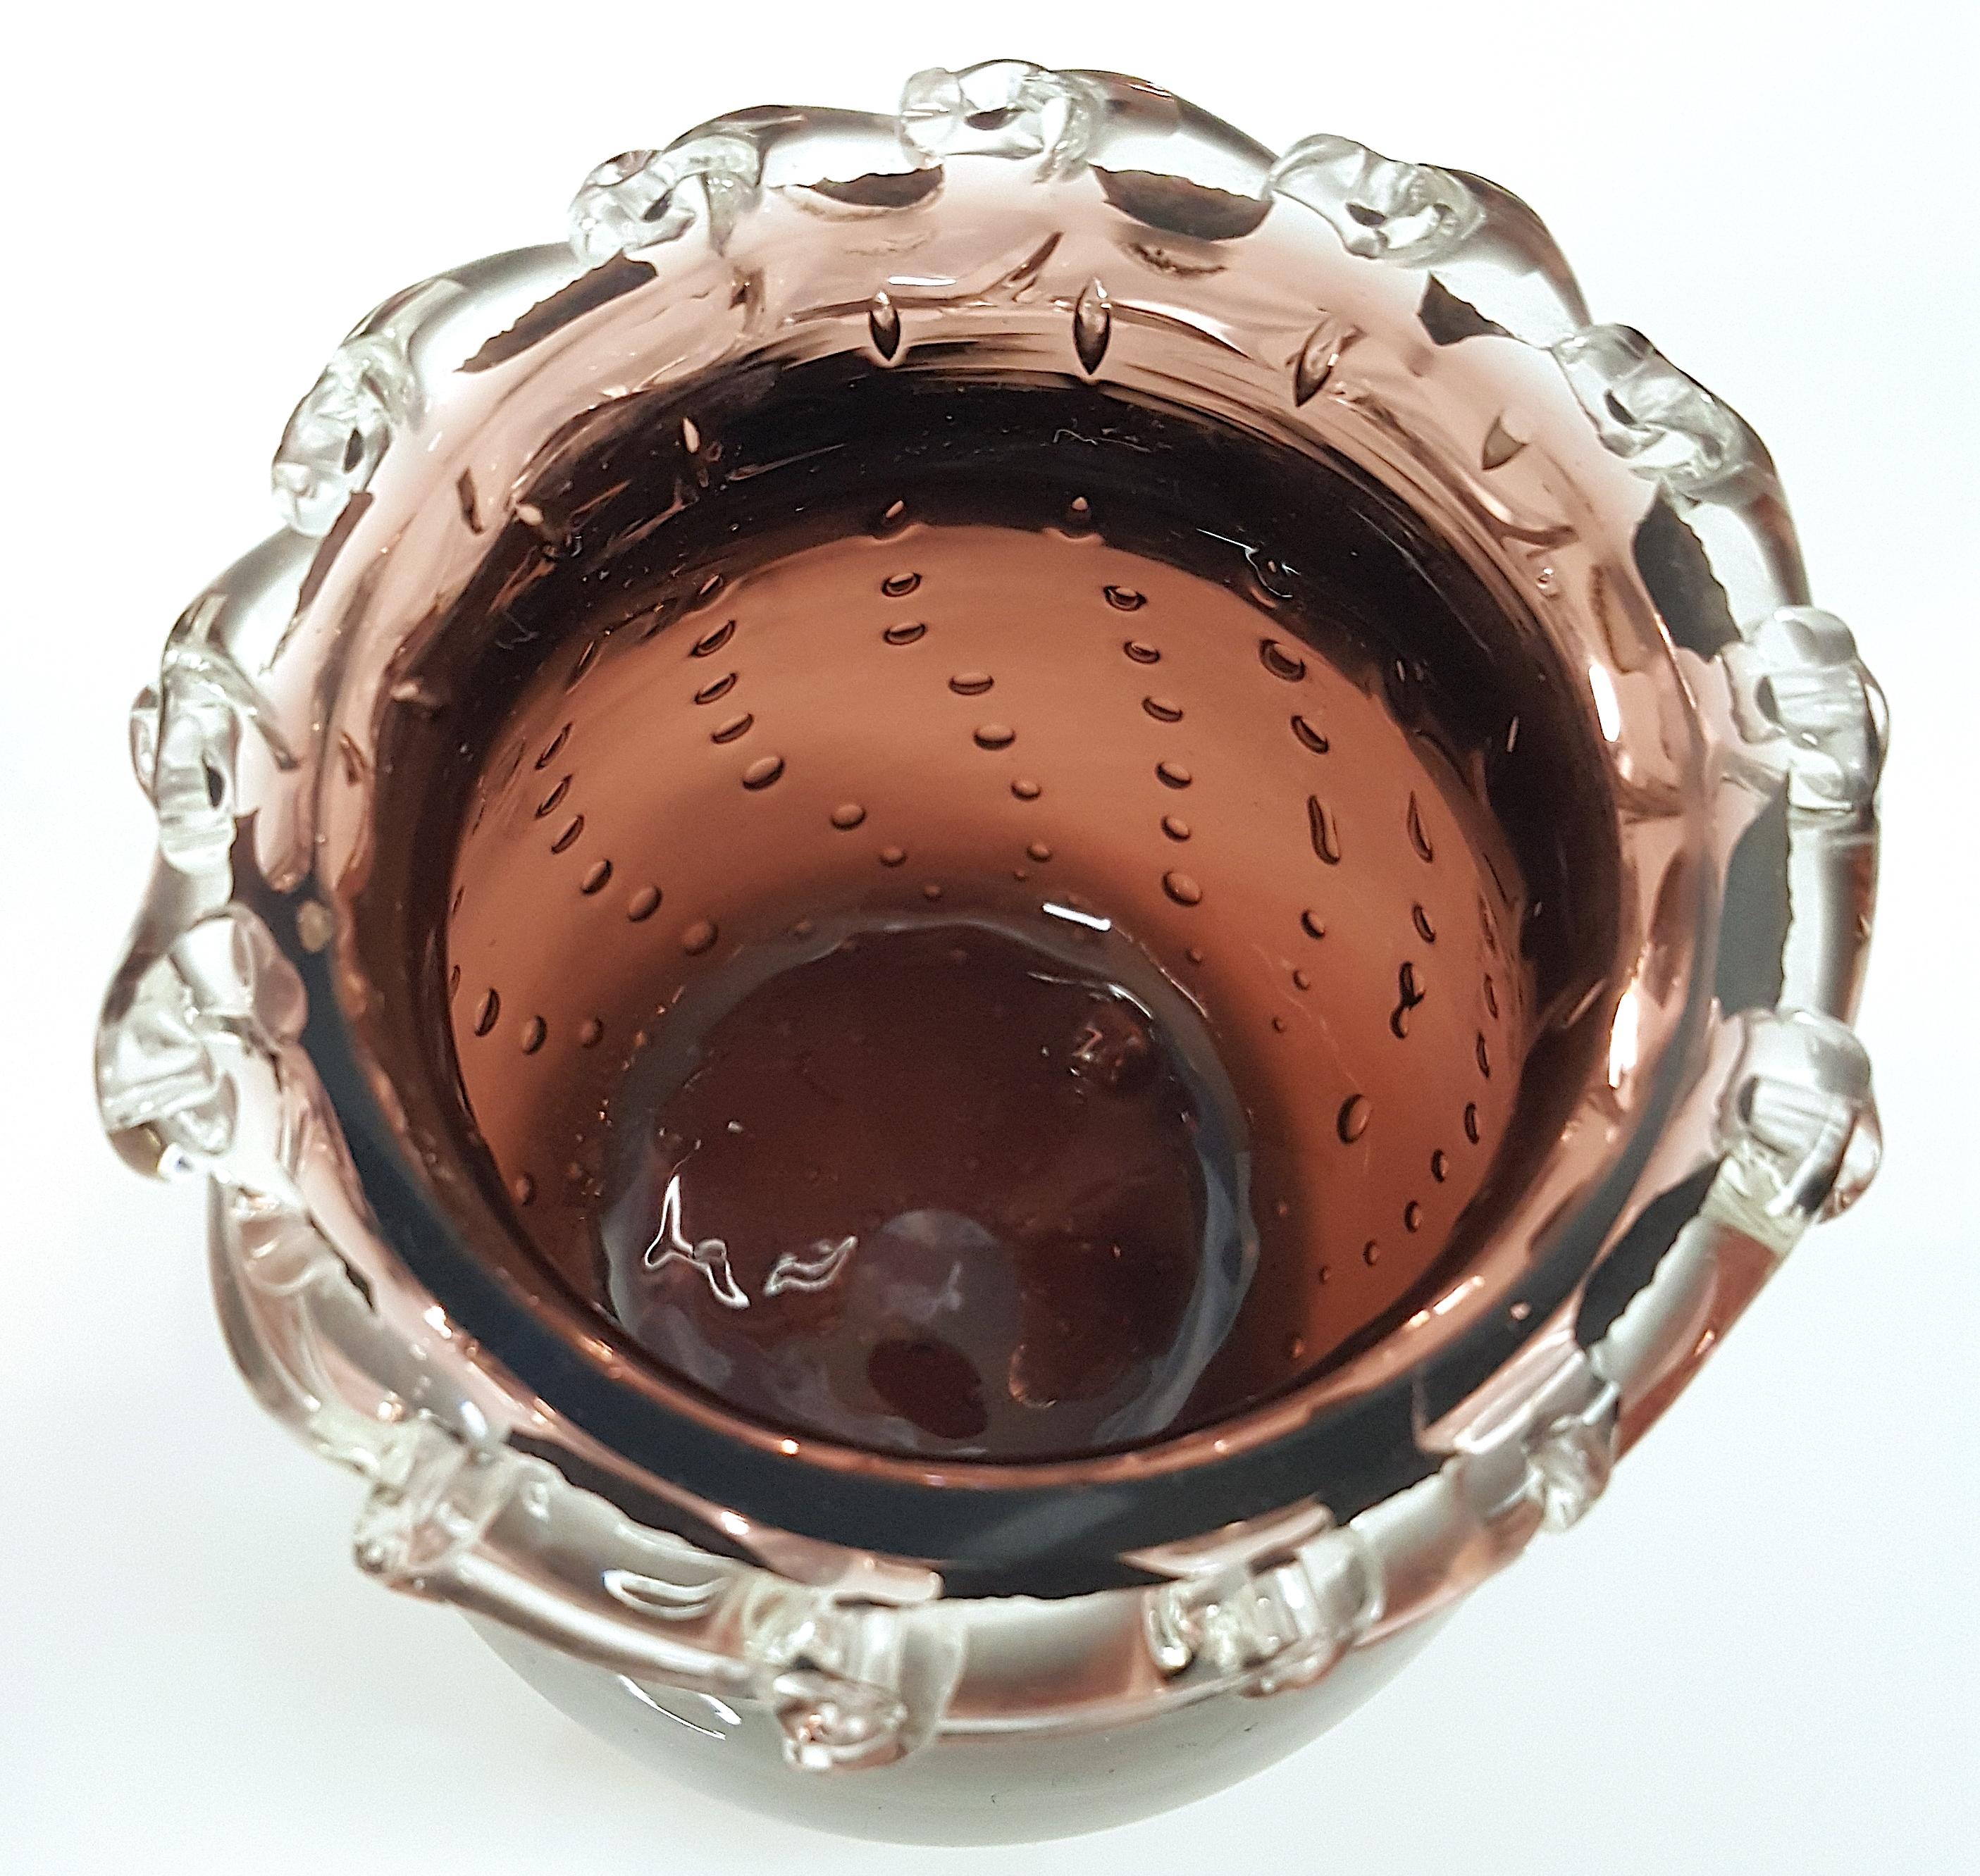 Diese antike Steuben-Vase aus der ArtDeco-Periode, die hauptsächlich aus violettem Glas besteht und von ihrem Mitbegründer Frederick Carder entworfen wurde, ist ein mit farblosem Kristall ummantelter 